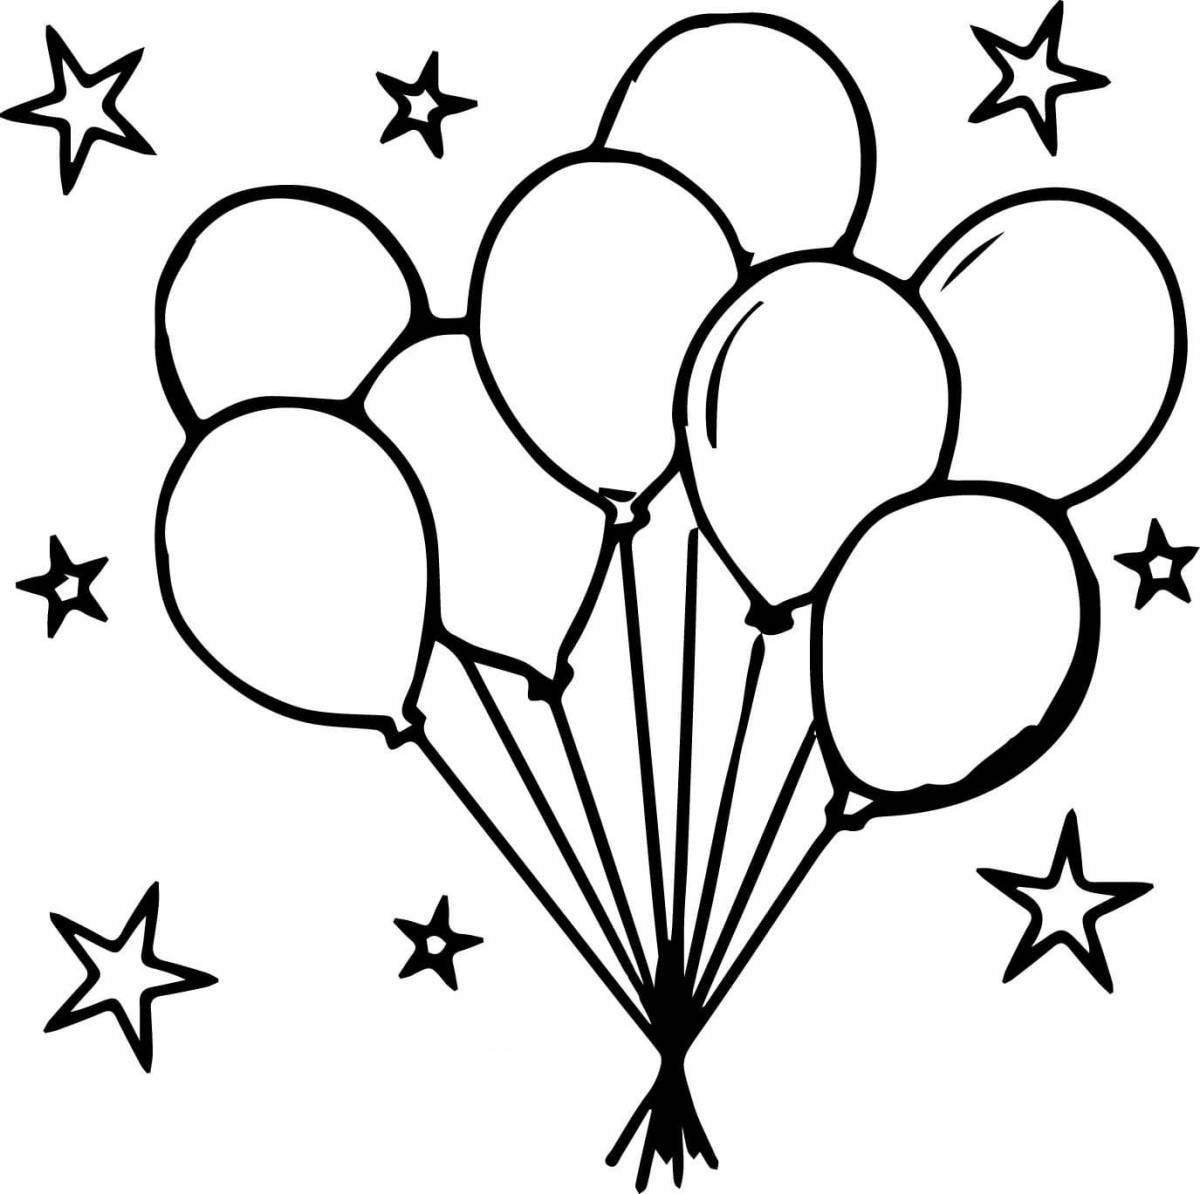 Воздушные шарики хвалебные (черный рисунок)